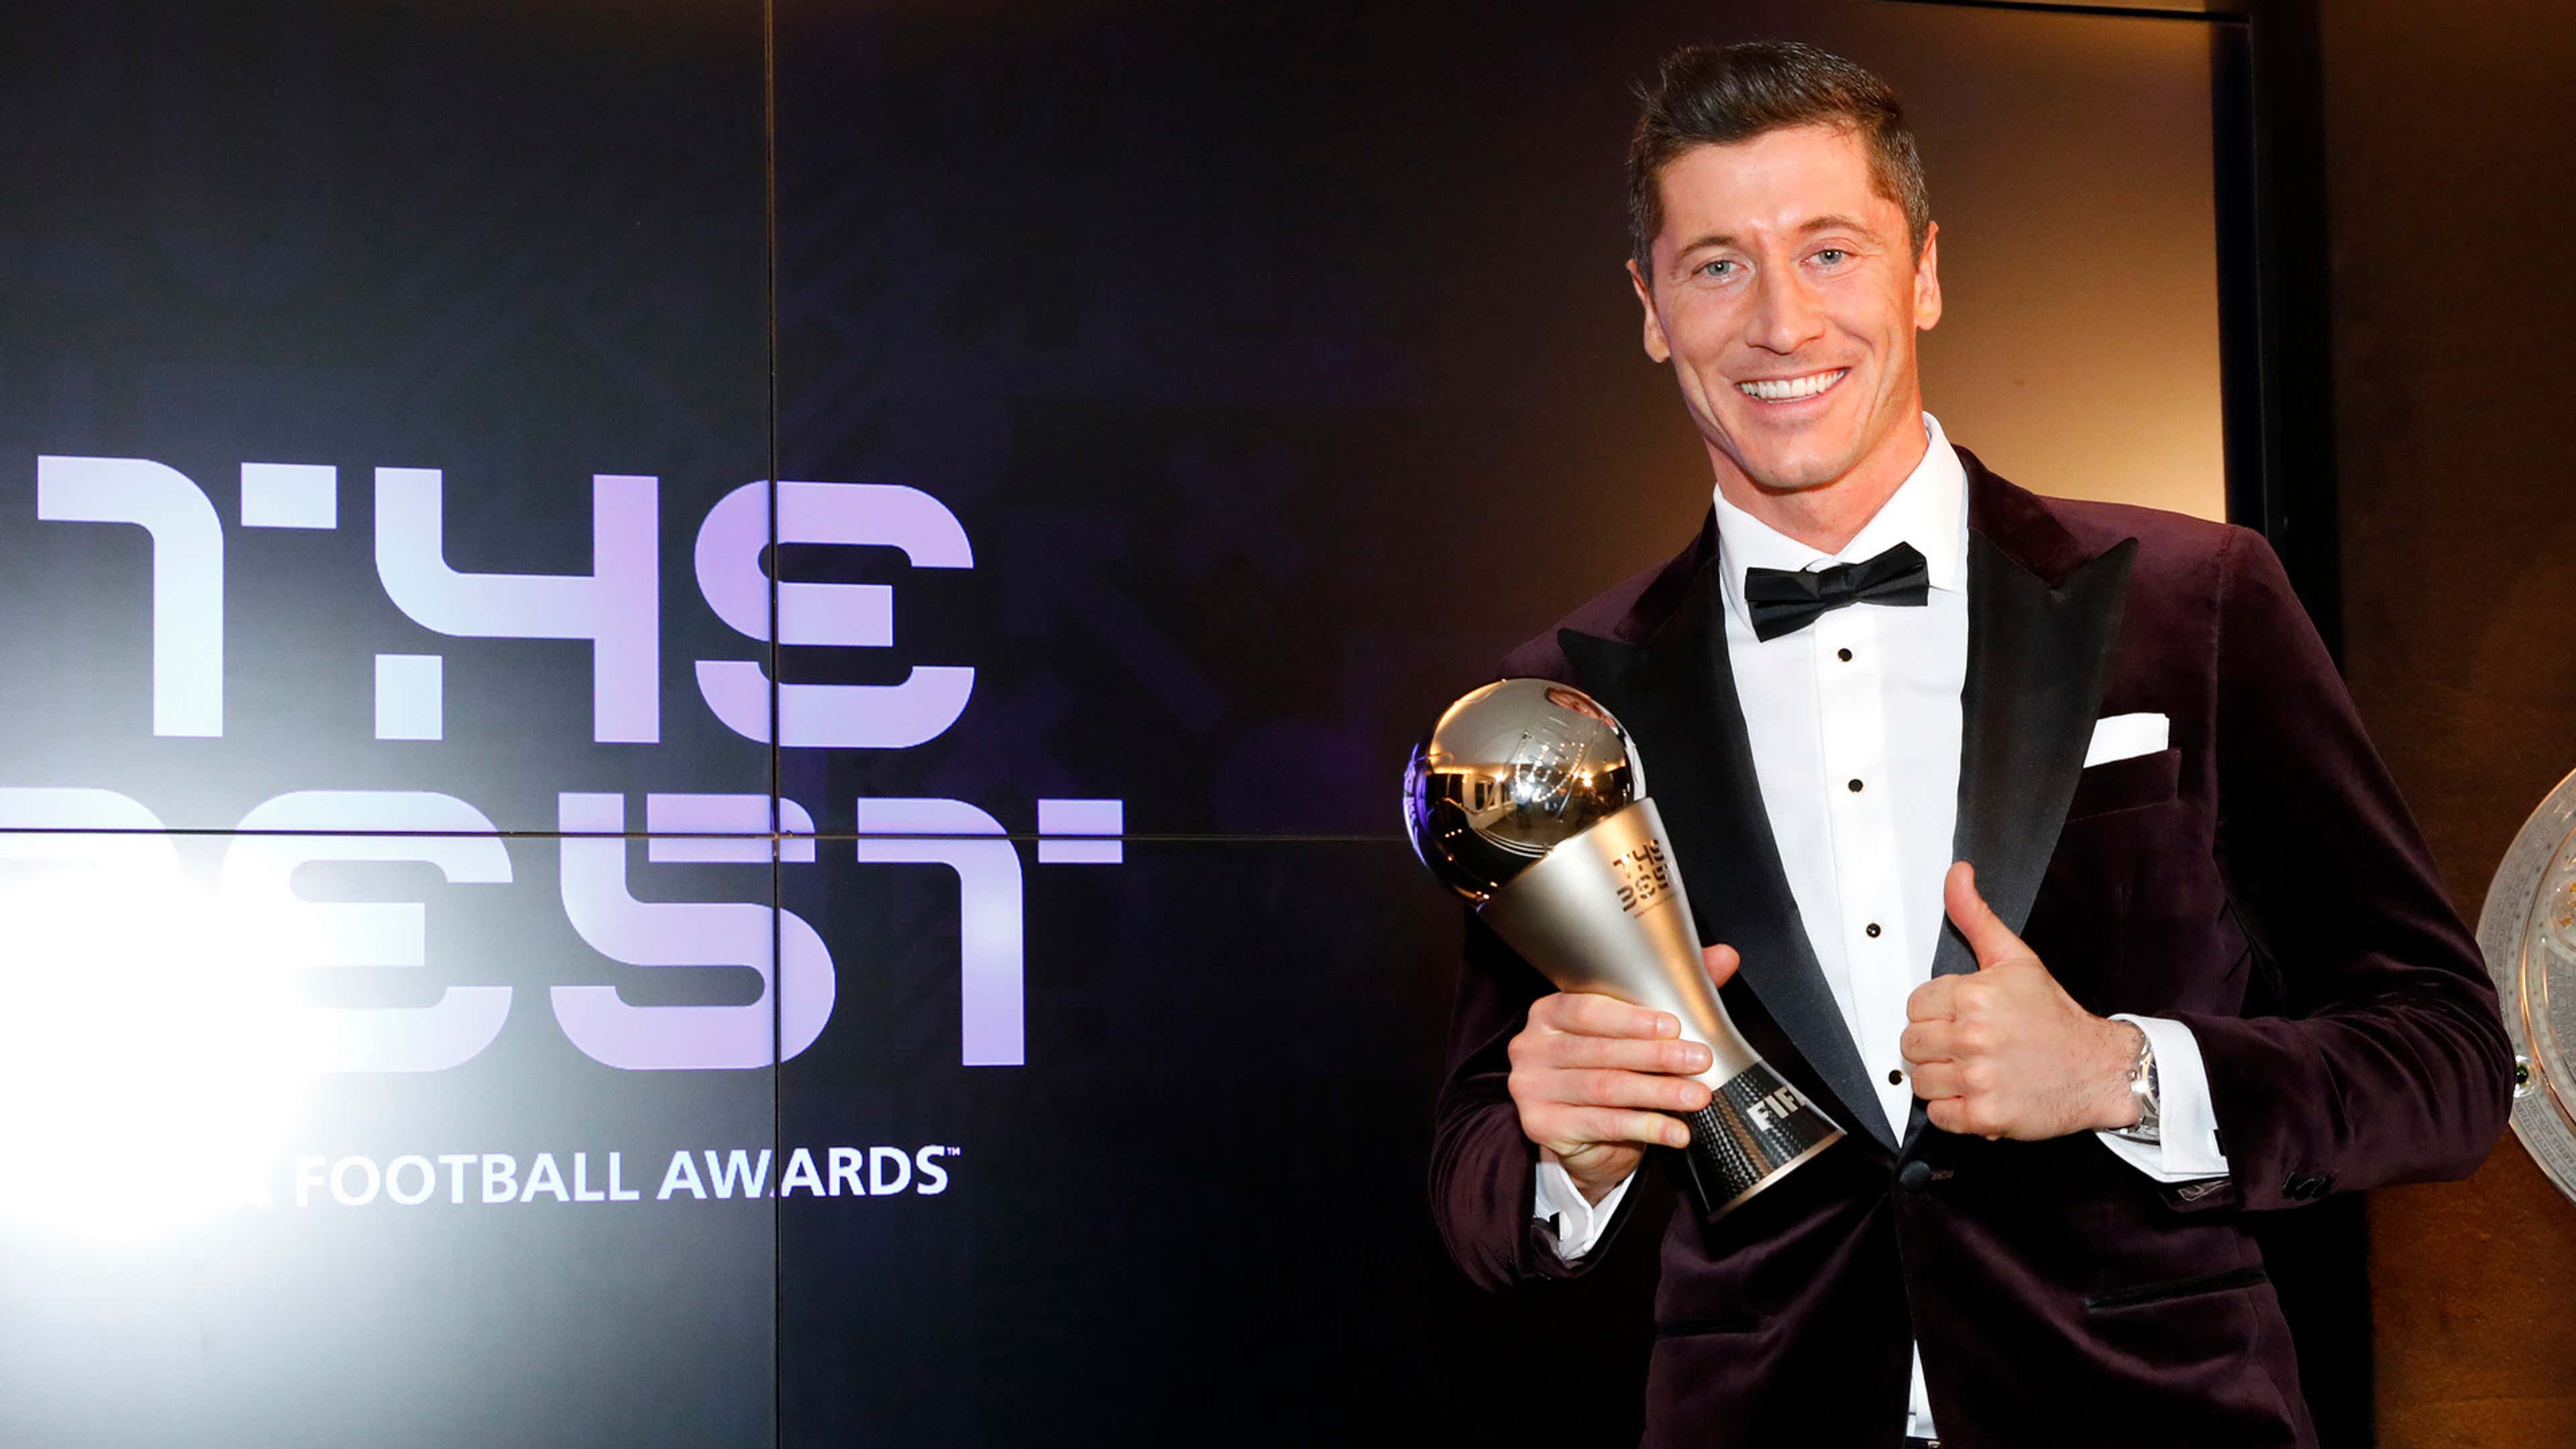 Fifa The Best elege o melhor jogador do mundo; veja quem foi o vencedor